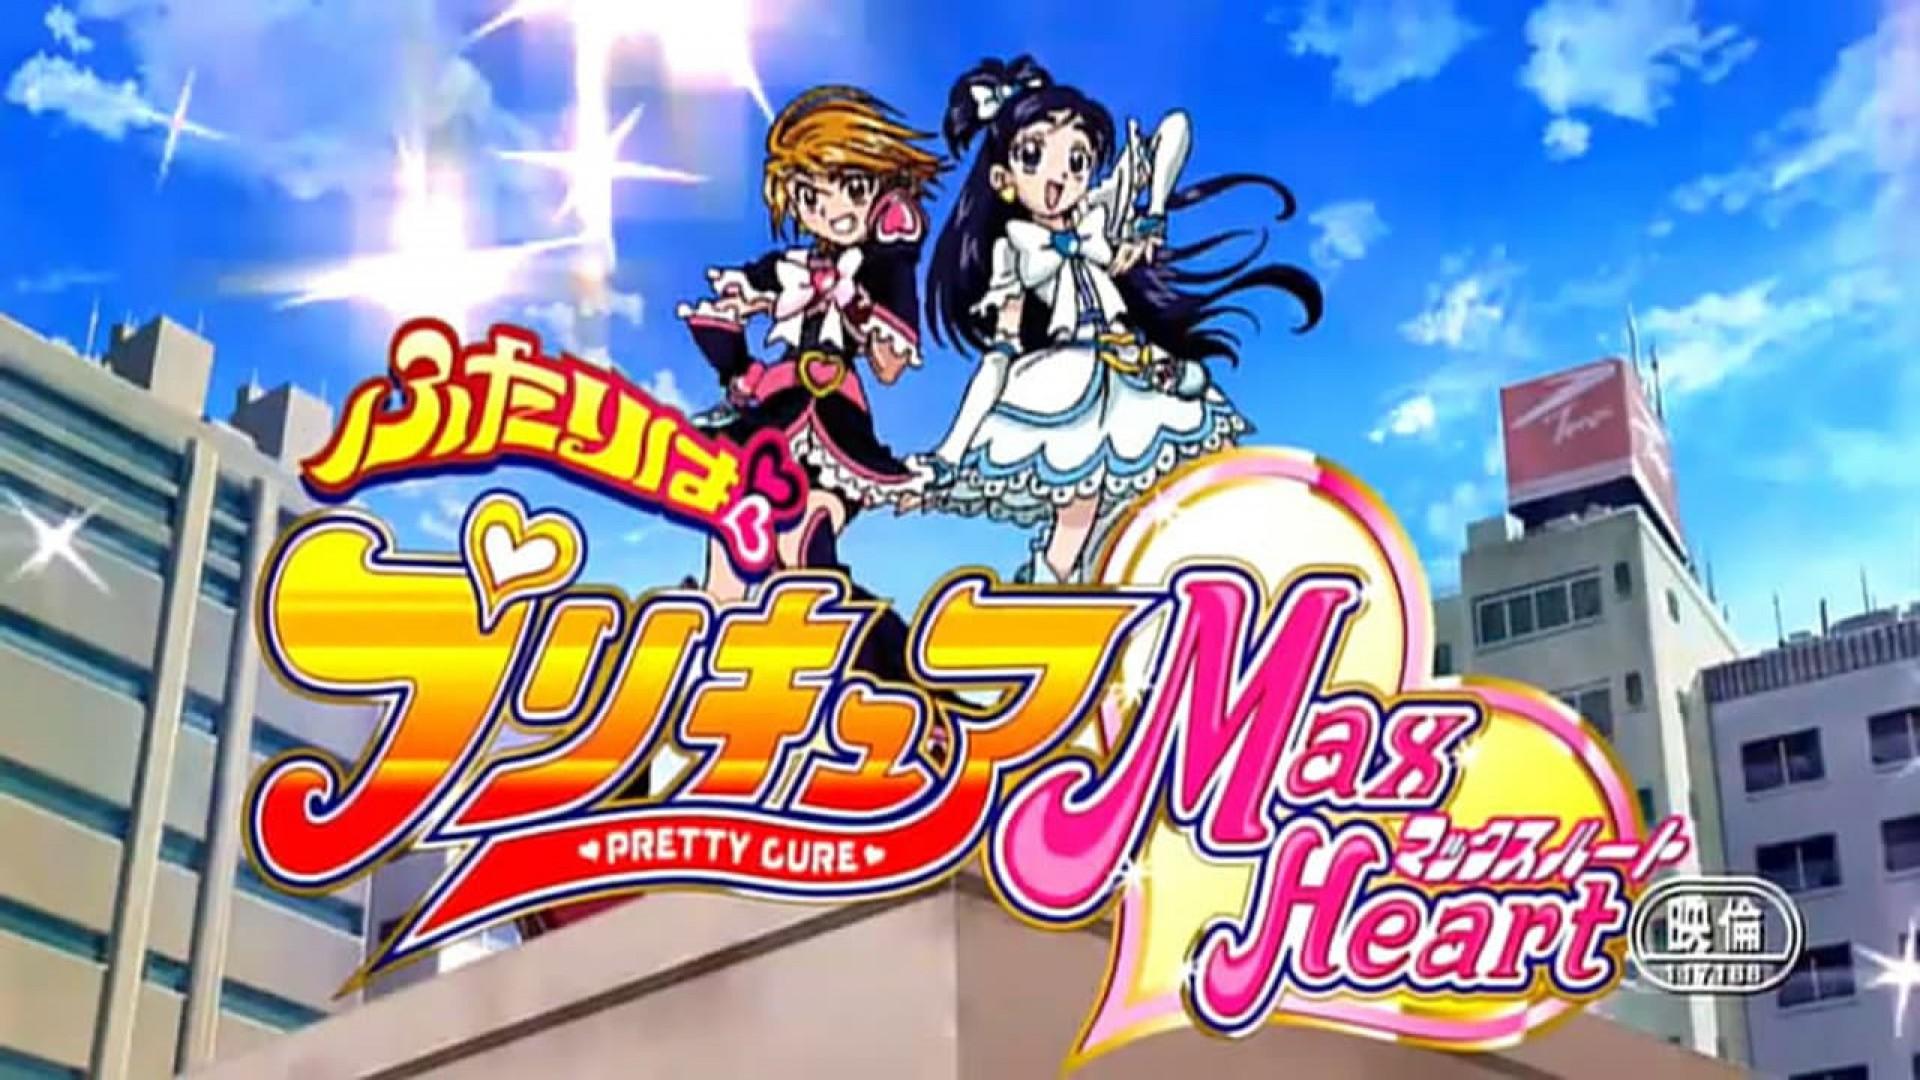 Futari wa Precure Max Heart: The Movie